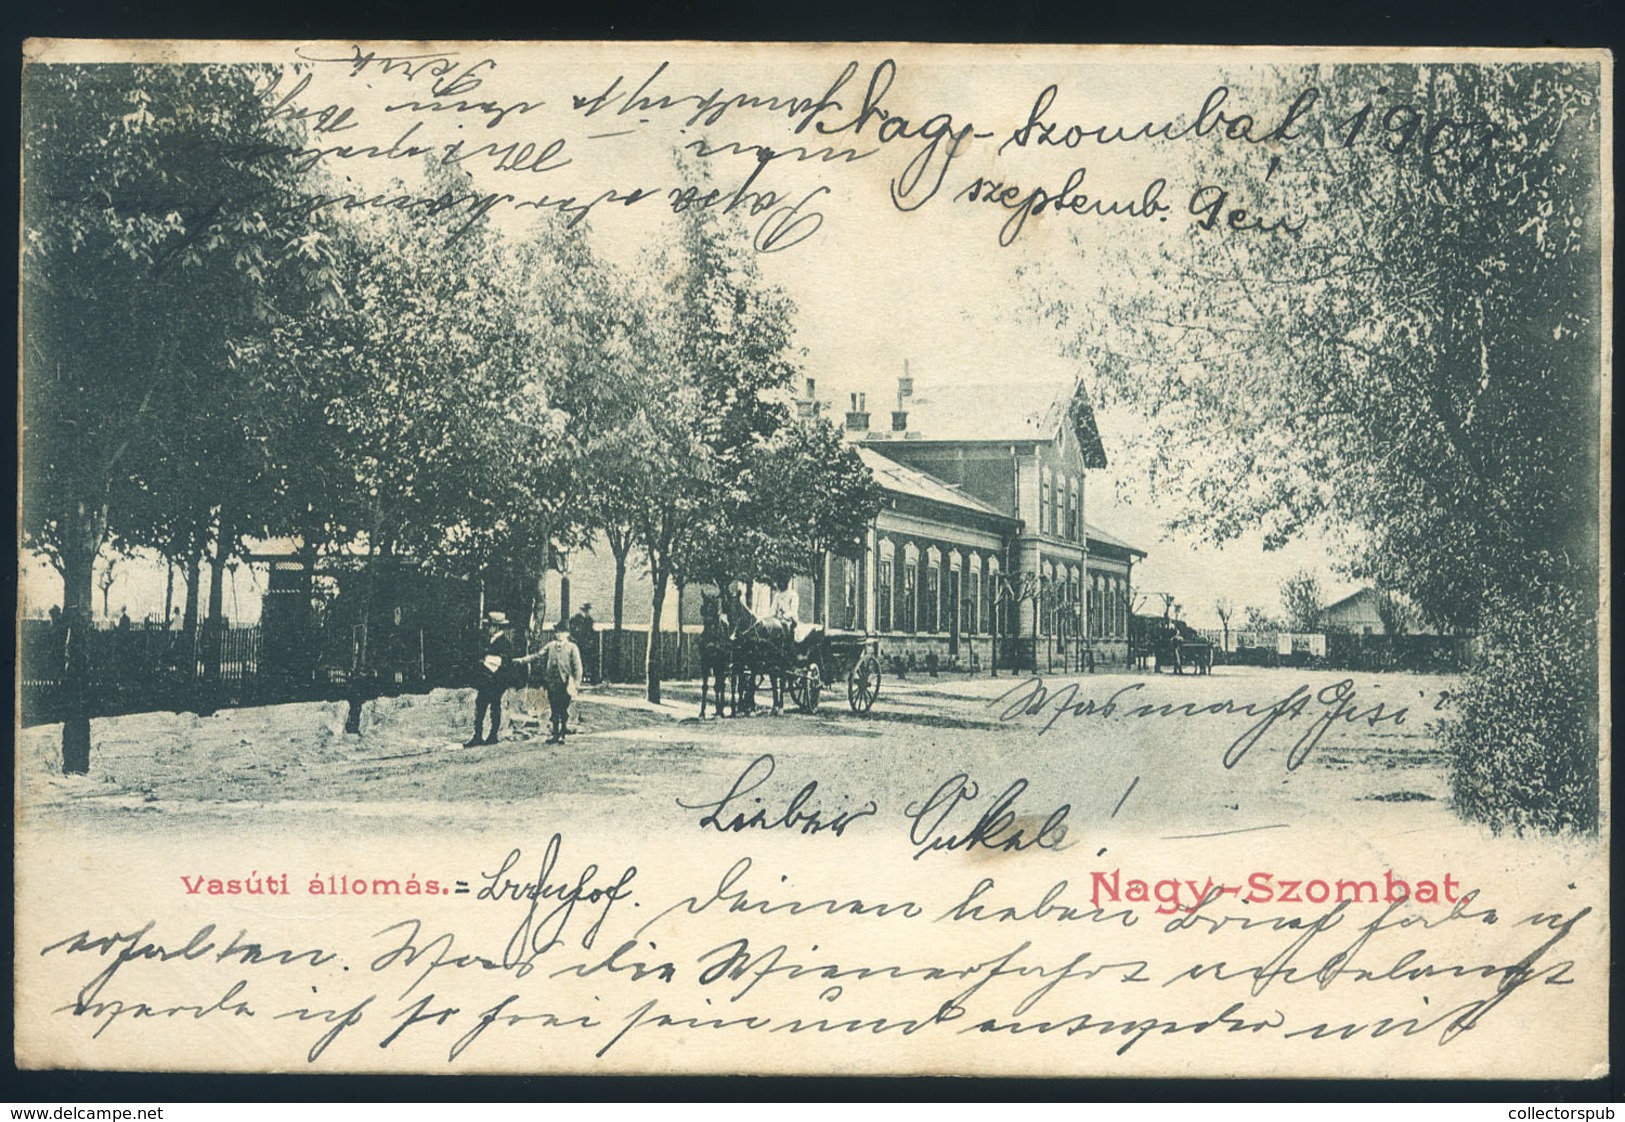 97278 NAGYSZOMBAT 1905. Vasútállomás, Régi Képeslap  /  NAGYSZOMBAT 1905 Train Station Vintage  Ppc HUNGARY / SLOVAKIA - Ungarn